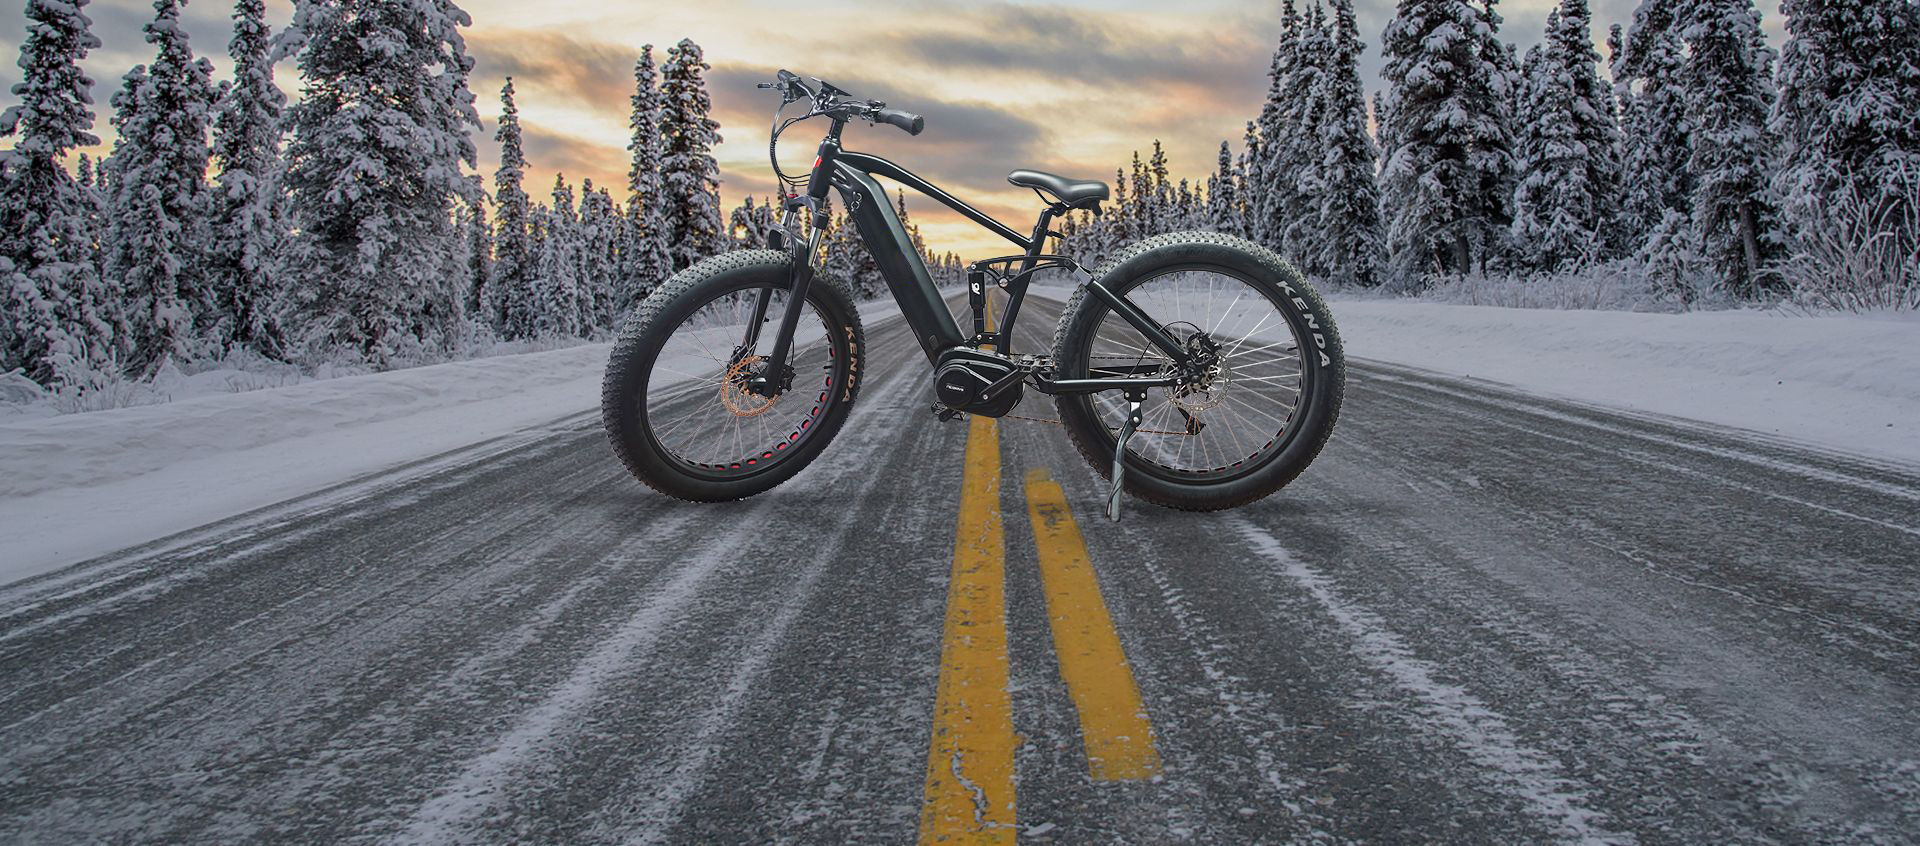 E-bicicletta da neve